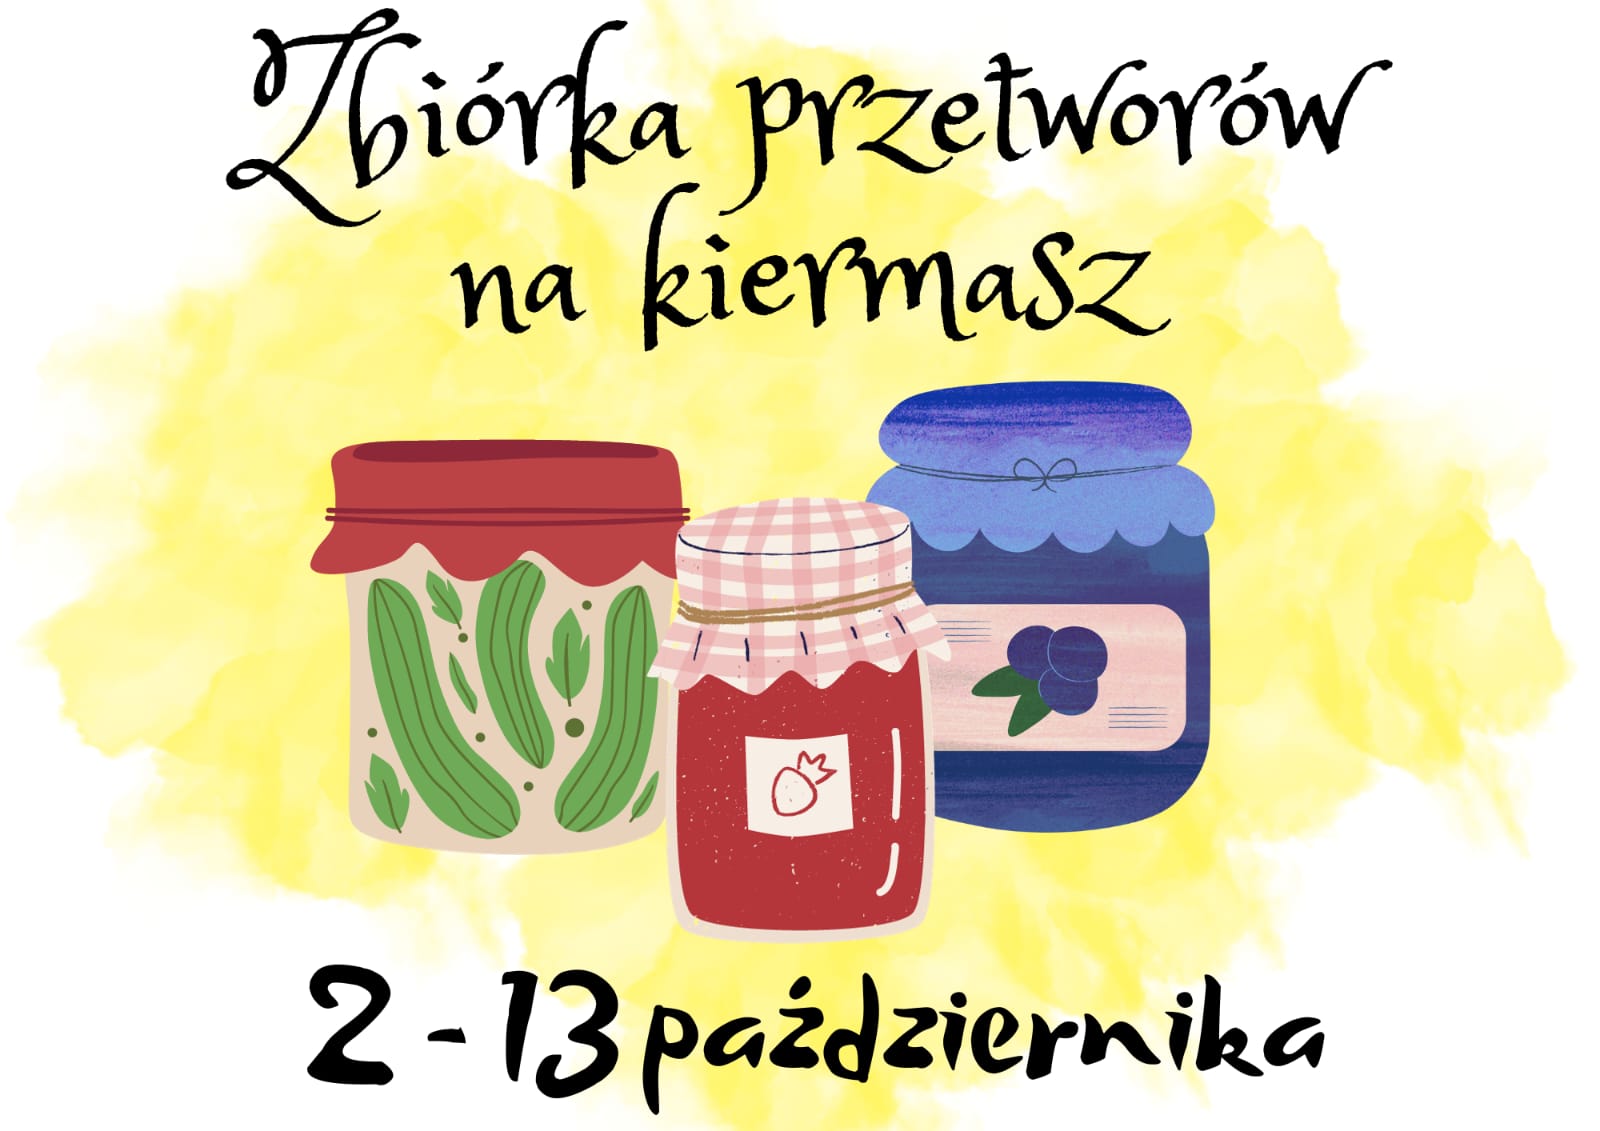 You are currently viewing Zbiórka przetworów